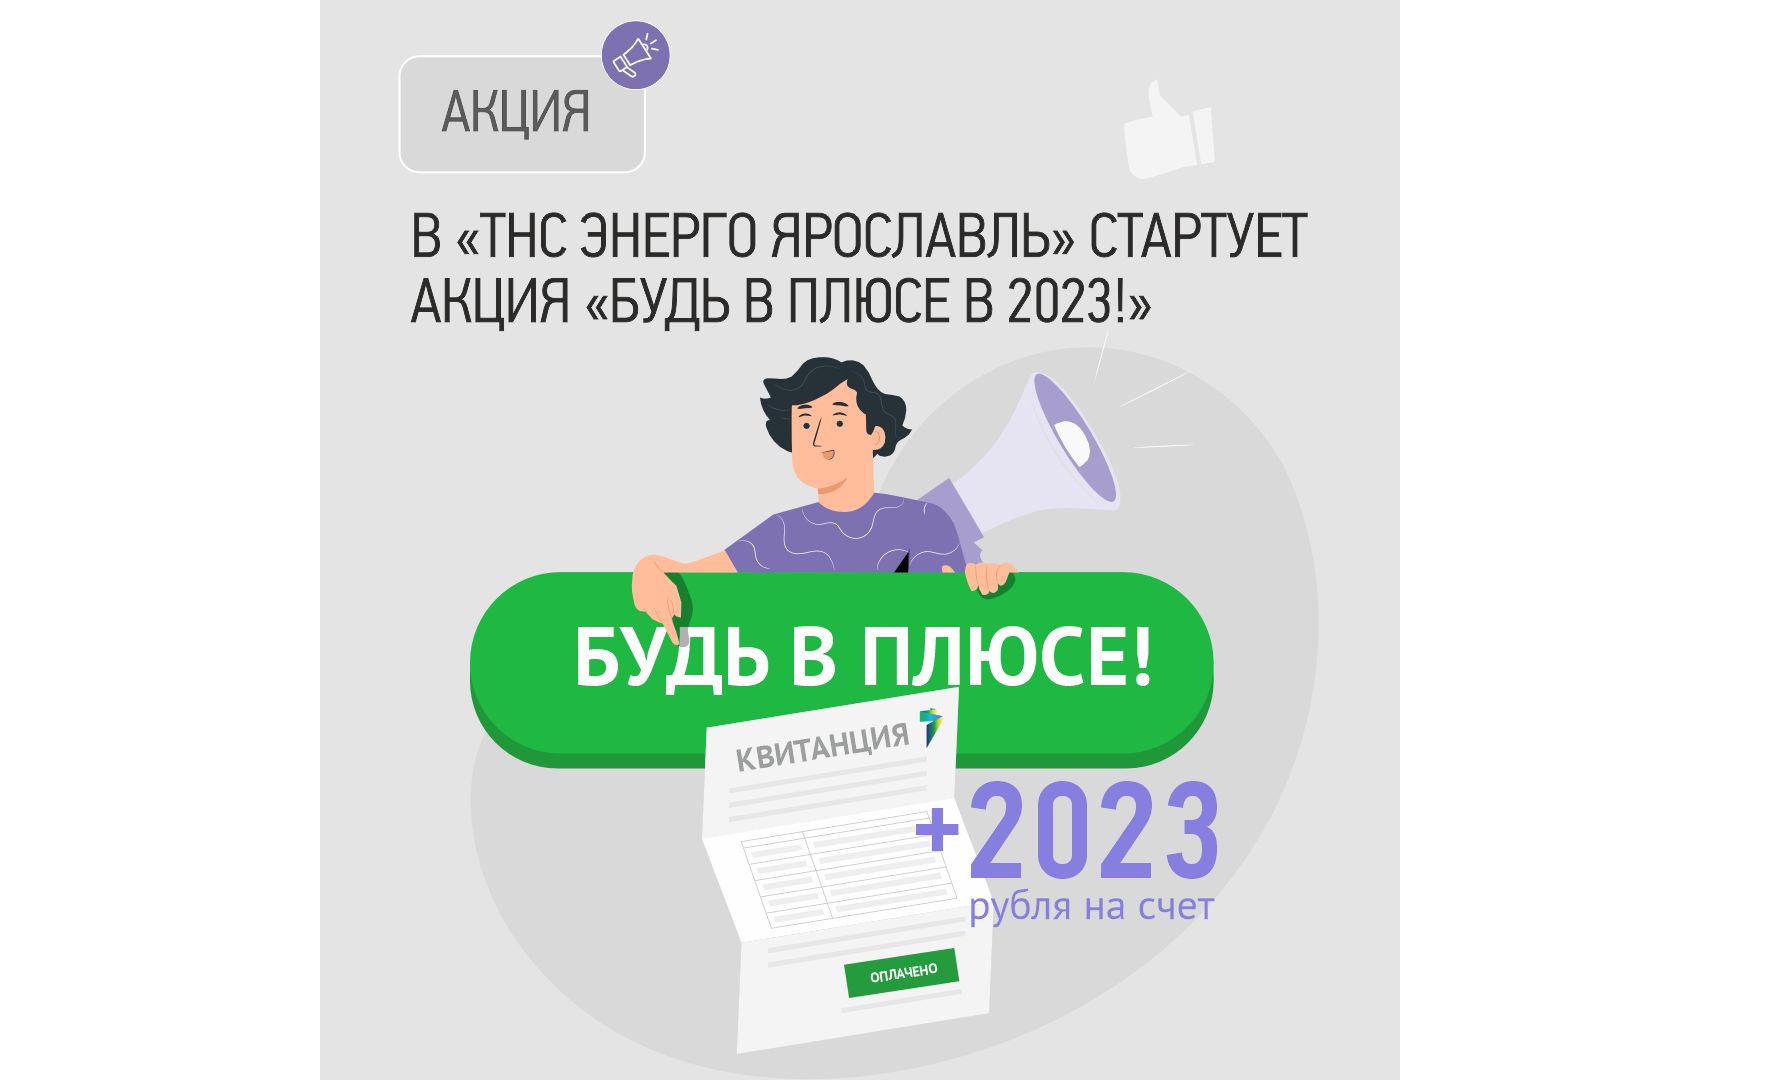 В «ТНС энерго Ярославль» стартует акция «Будь в плюсе в 2023!»